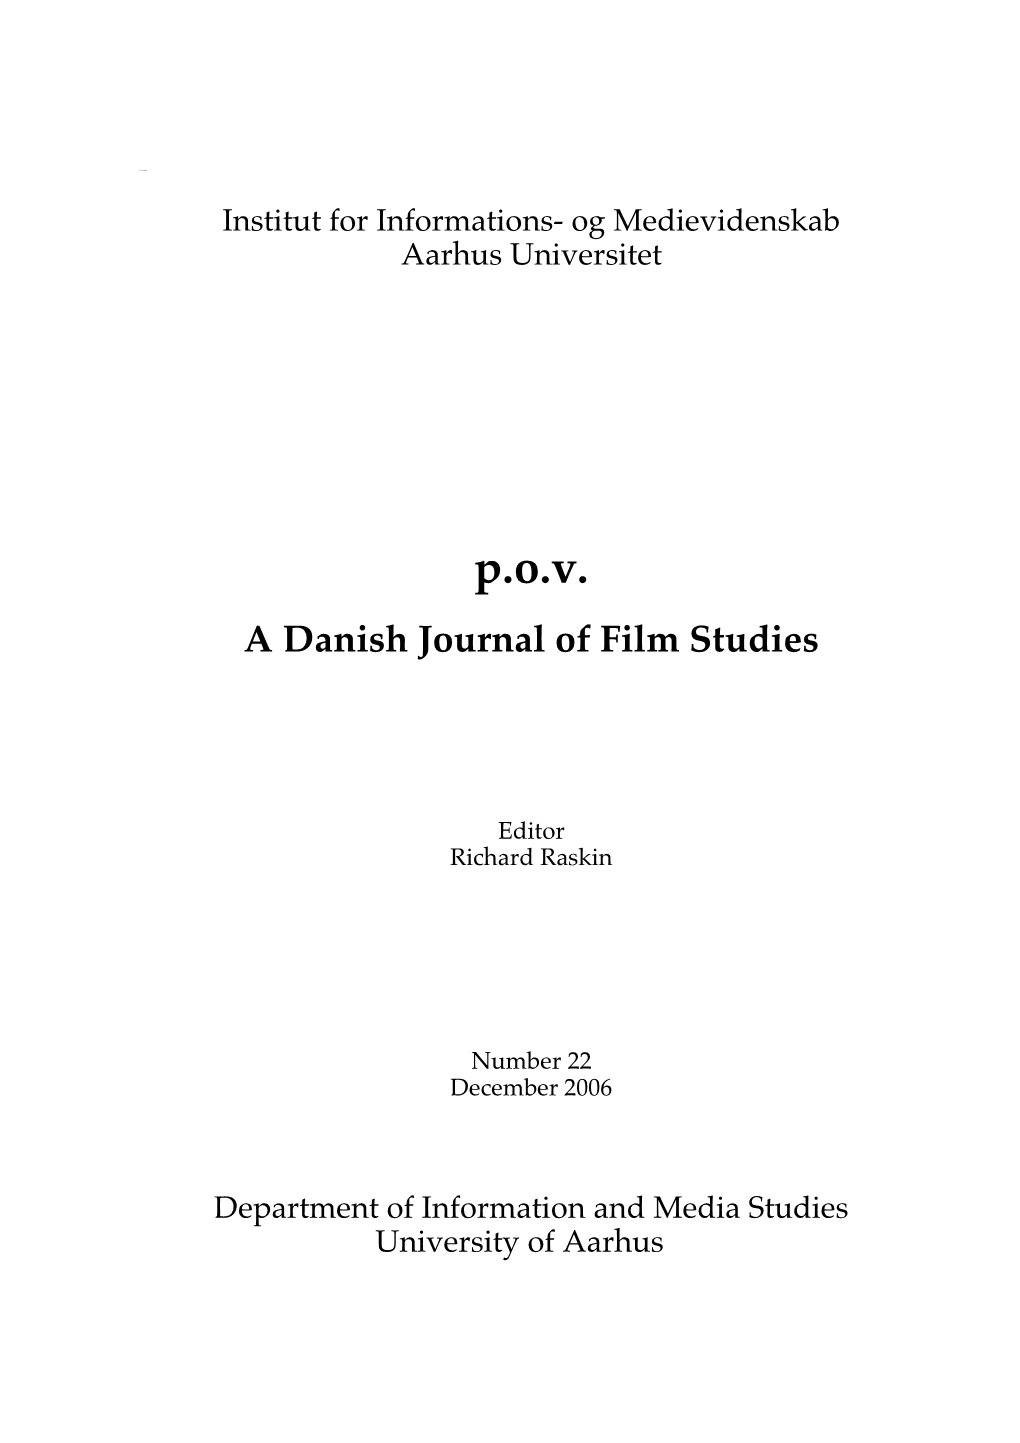 Institut for Informations- Og Medievidenskab Aarhus Universitet